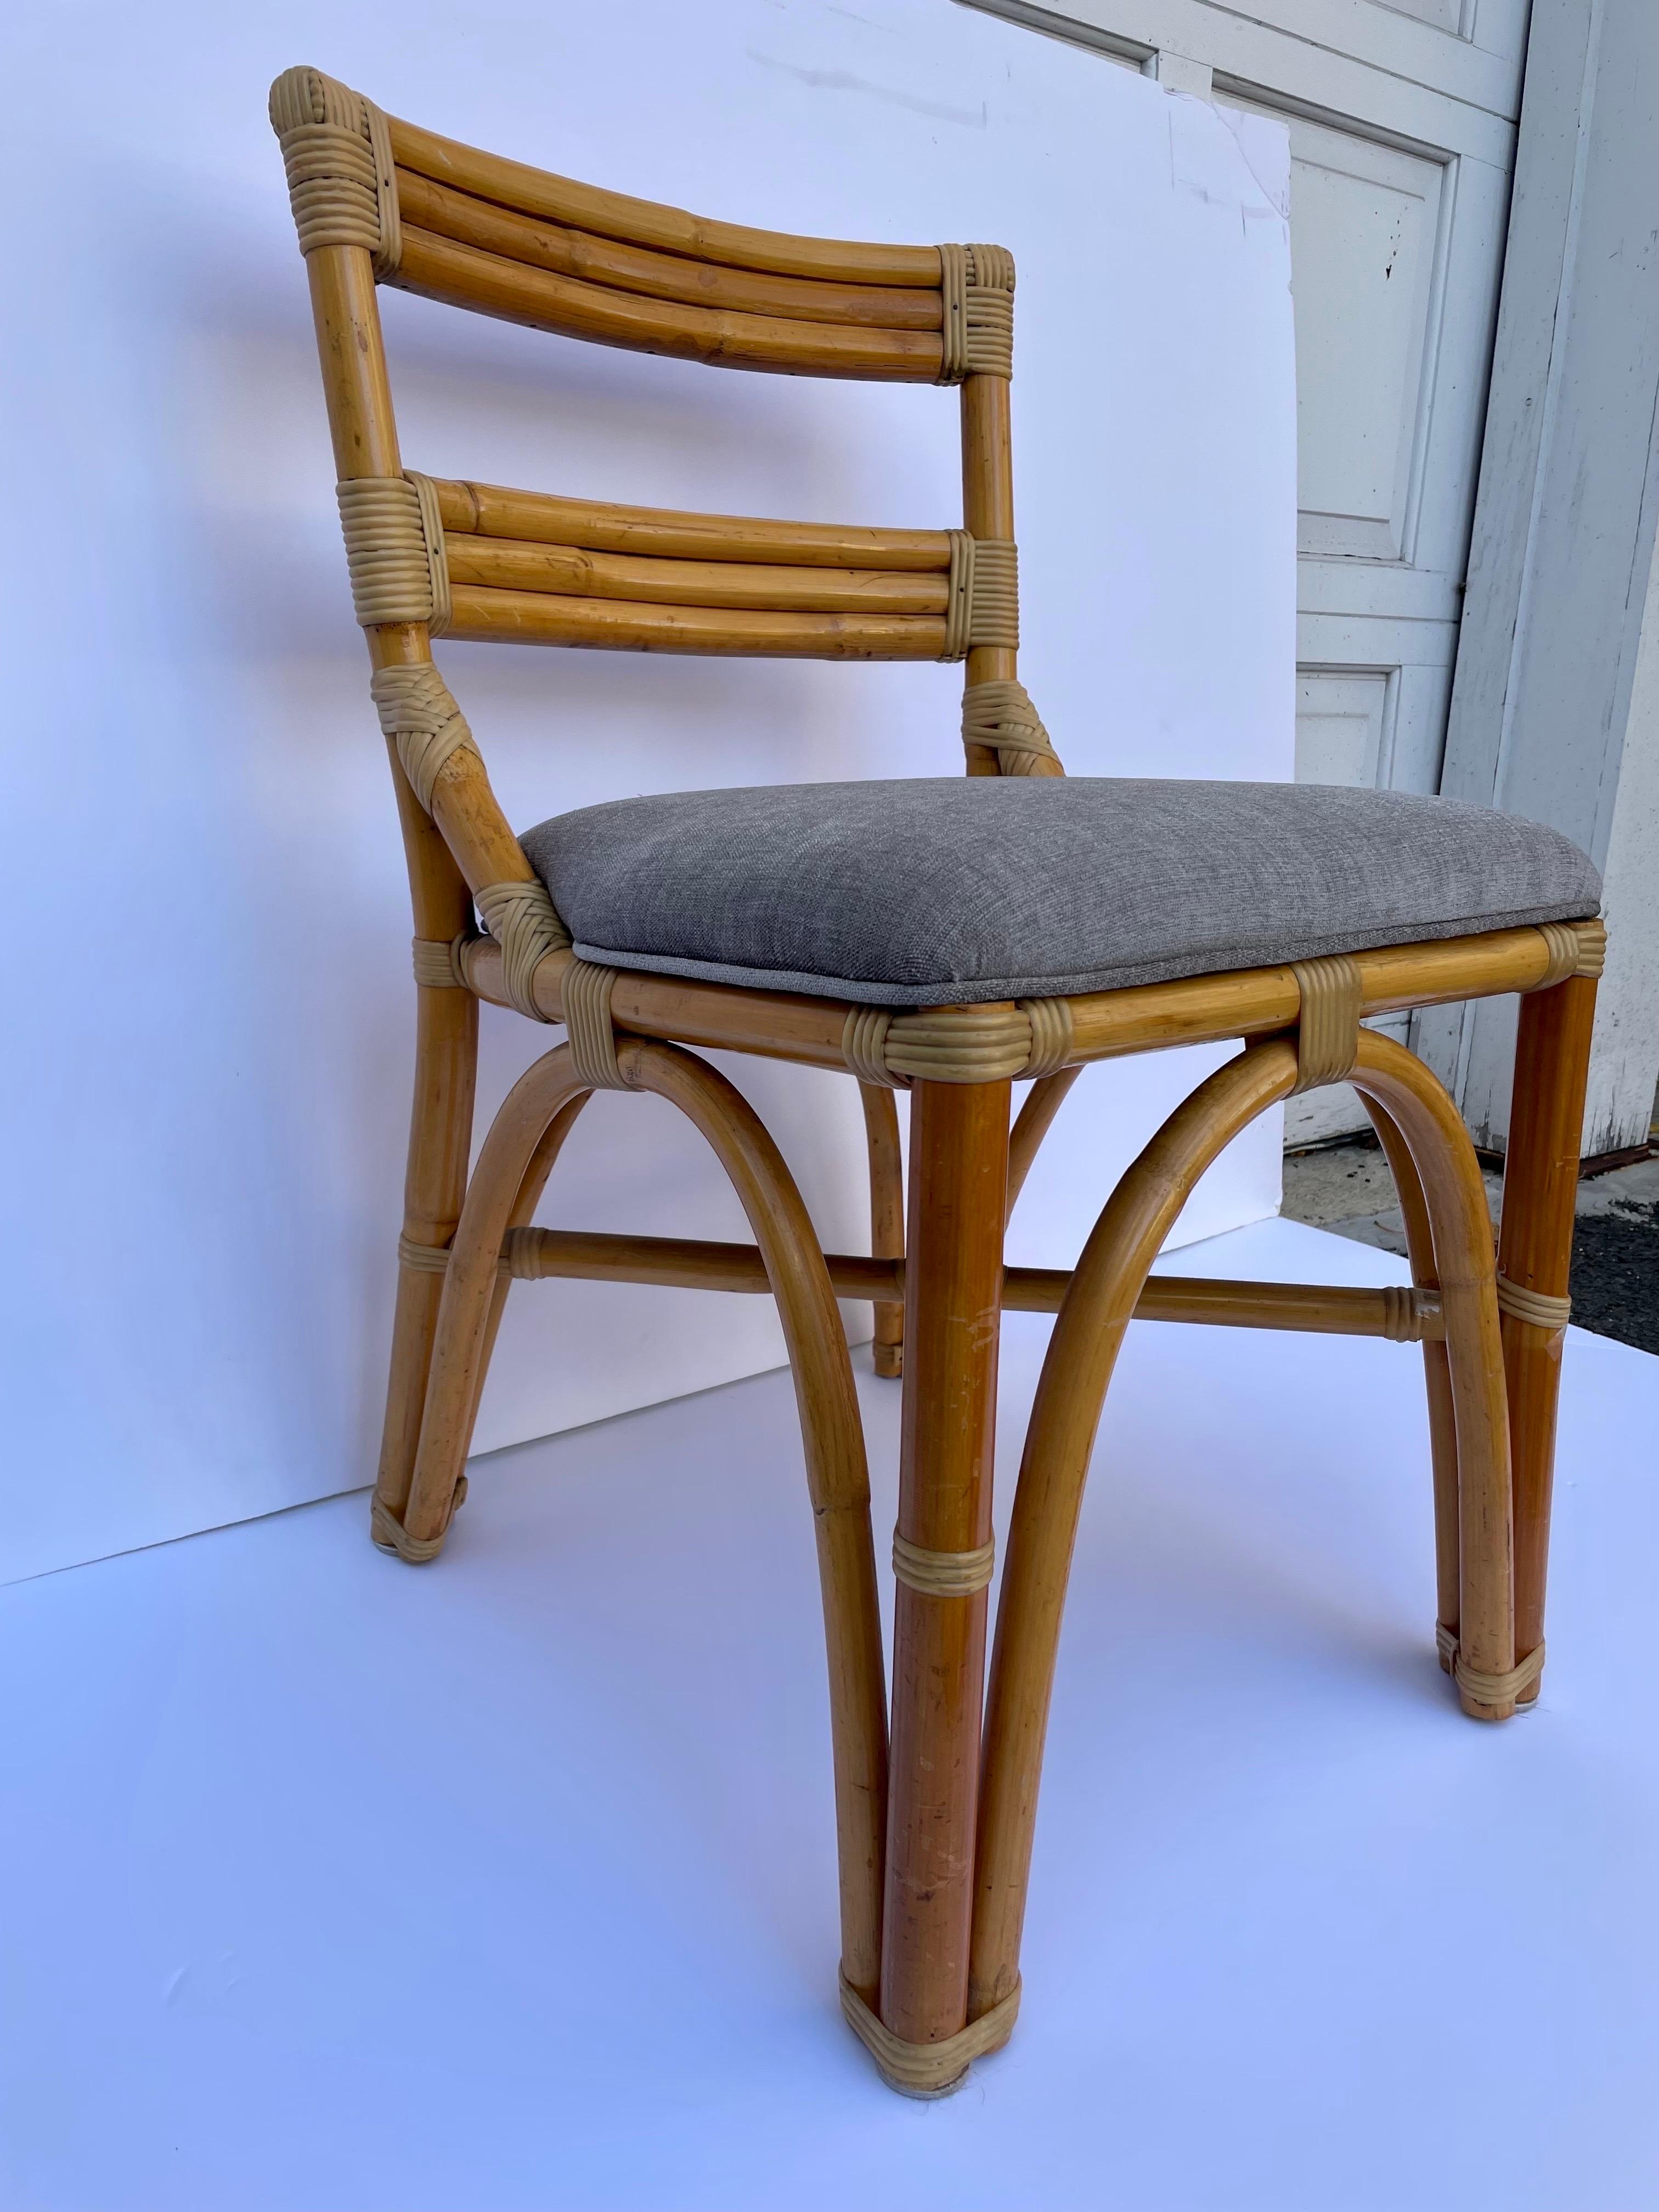 Chaise d'appoint ou de bureau en bambou à base arquée de style Paul Frankl, avec nouveau revêtement en chenille grise. Légère usure de la finition de la monture due à l'utilisation et à l'âge.